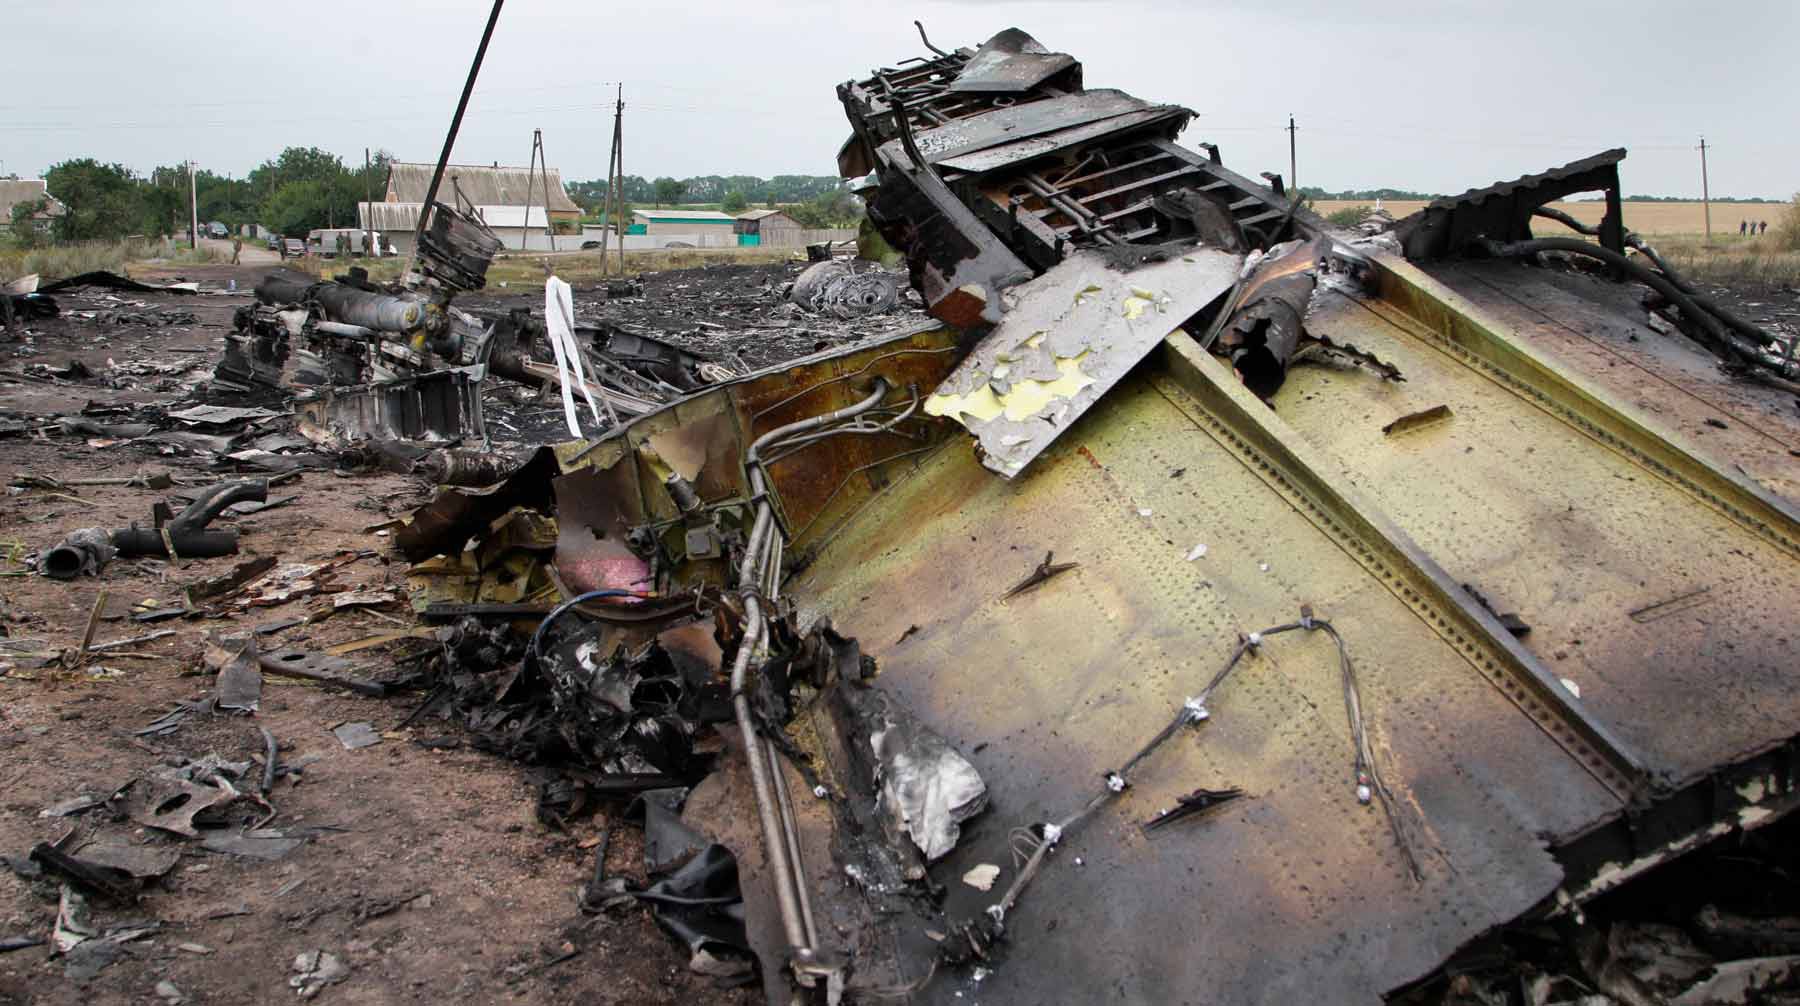 Dailystorm - Нидерланды решили допросить российских военных по делу MH17